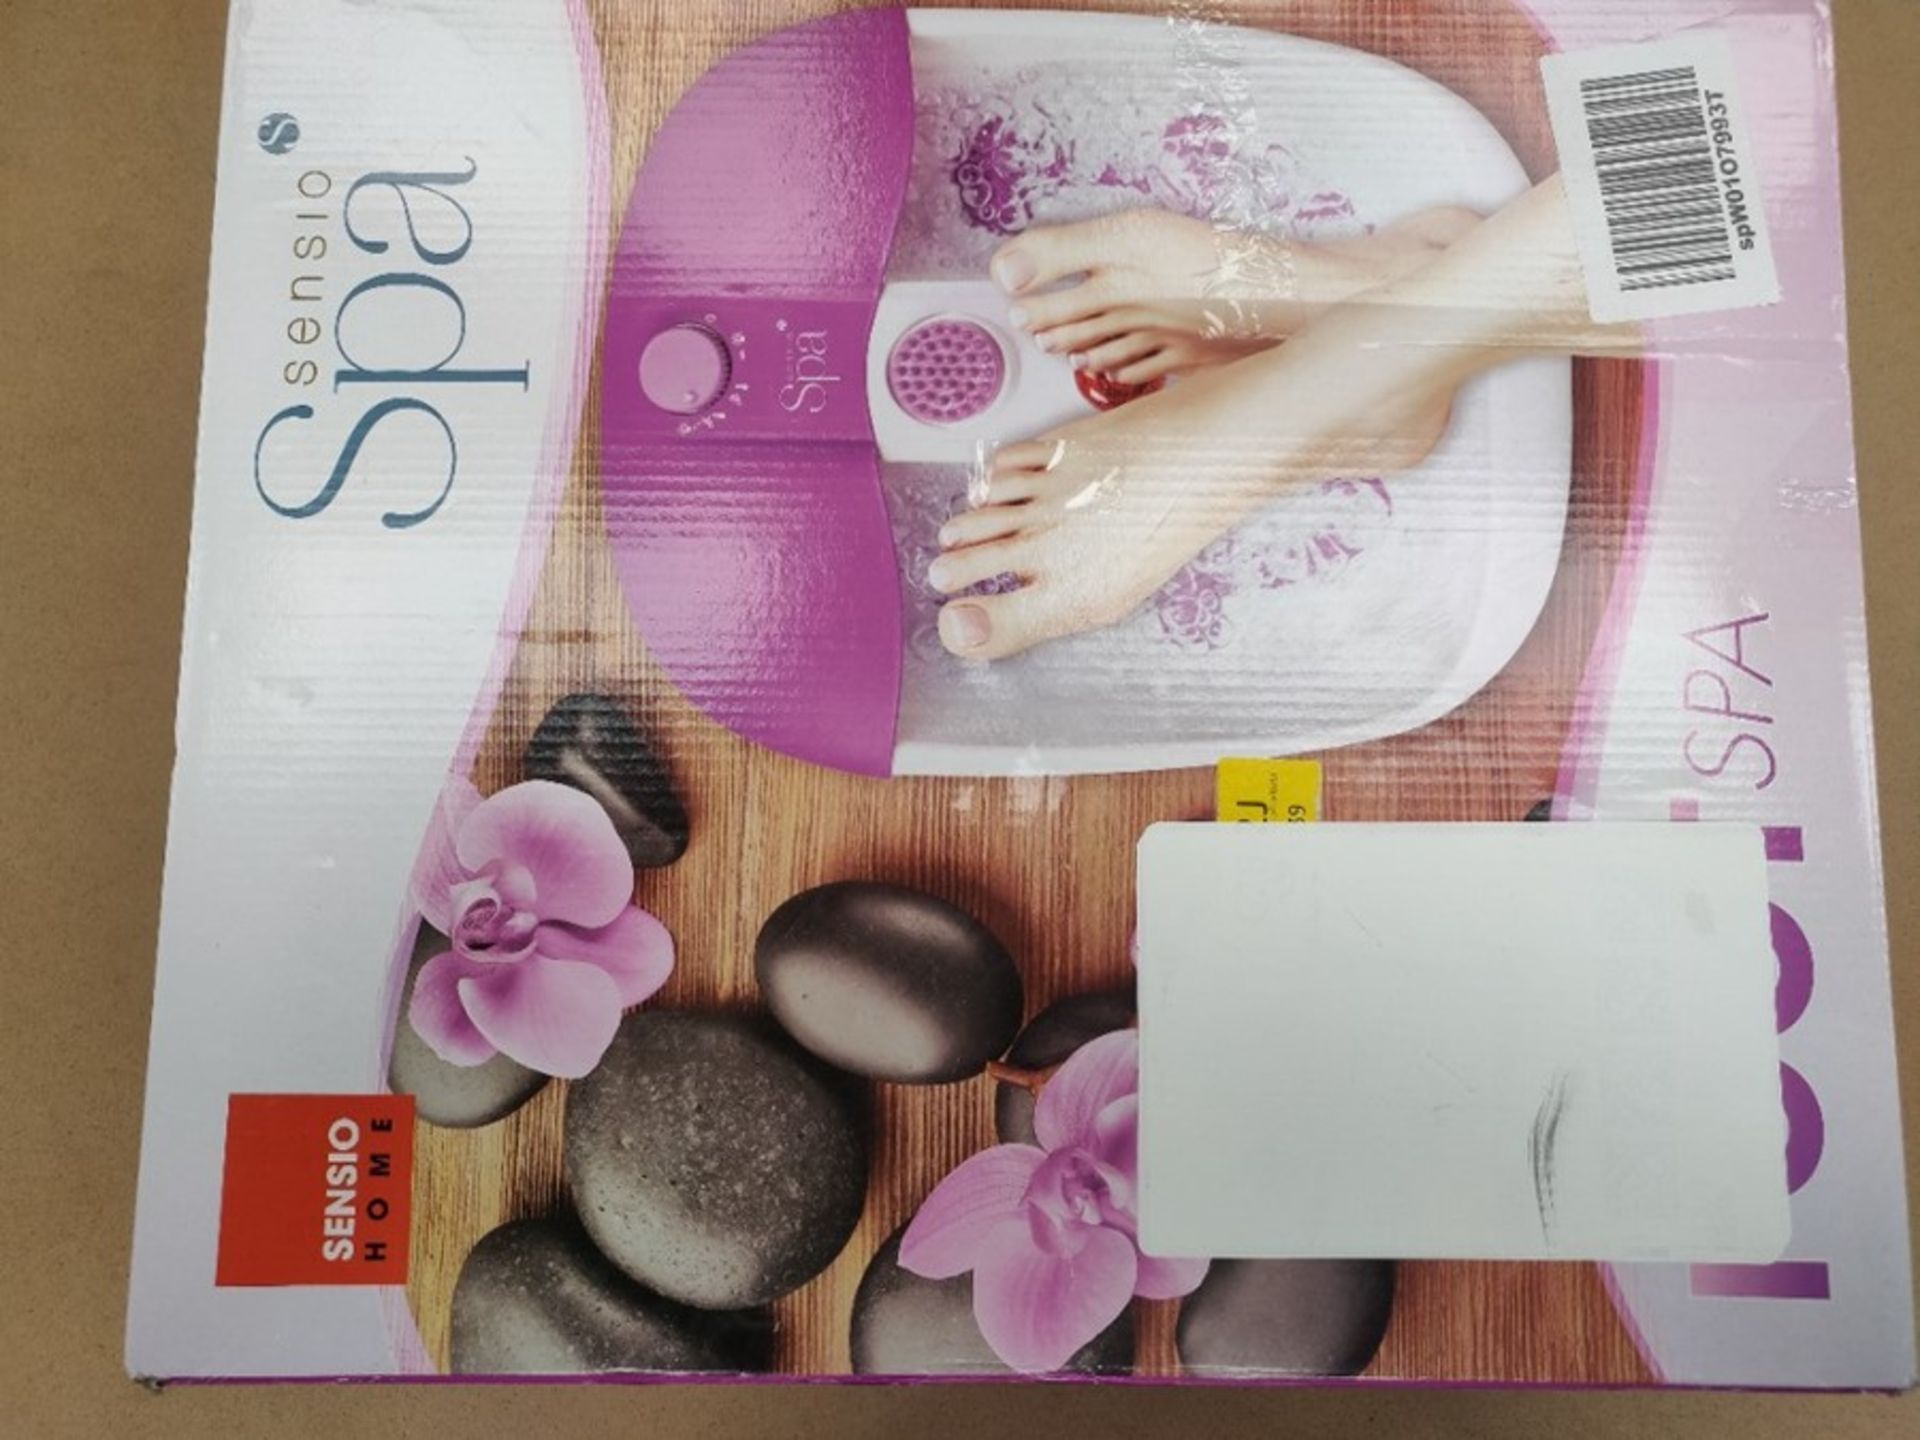 Sensio Foot Spa Massager Pedicure Bath  Nine accessories - Pamper Your Feet with He - Bild 2 aus 3